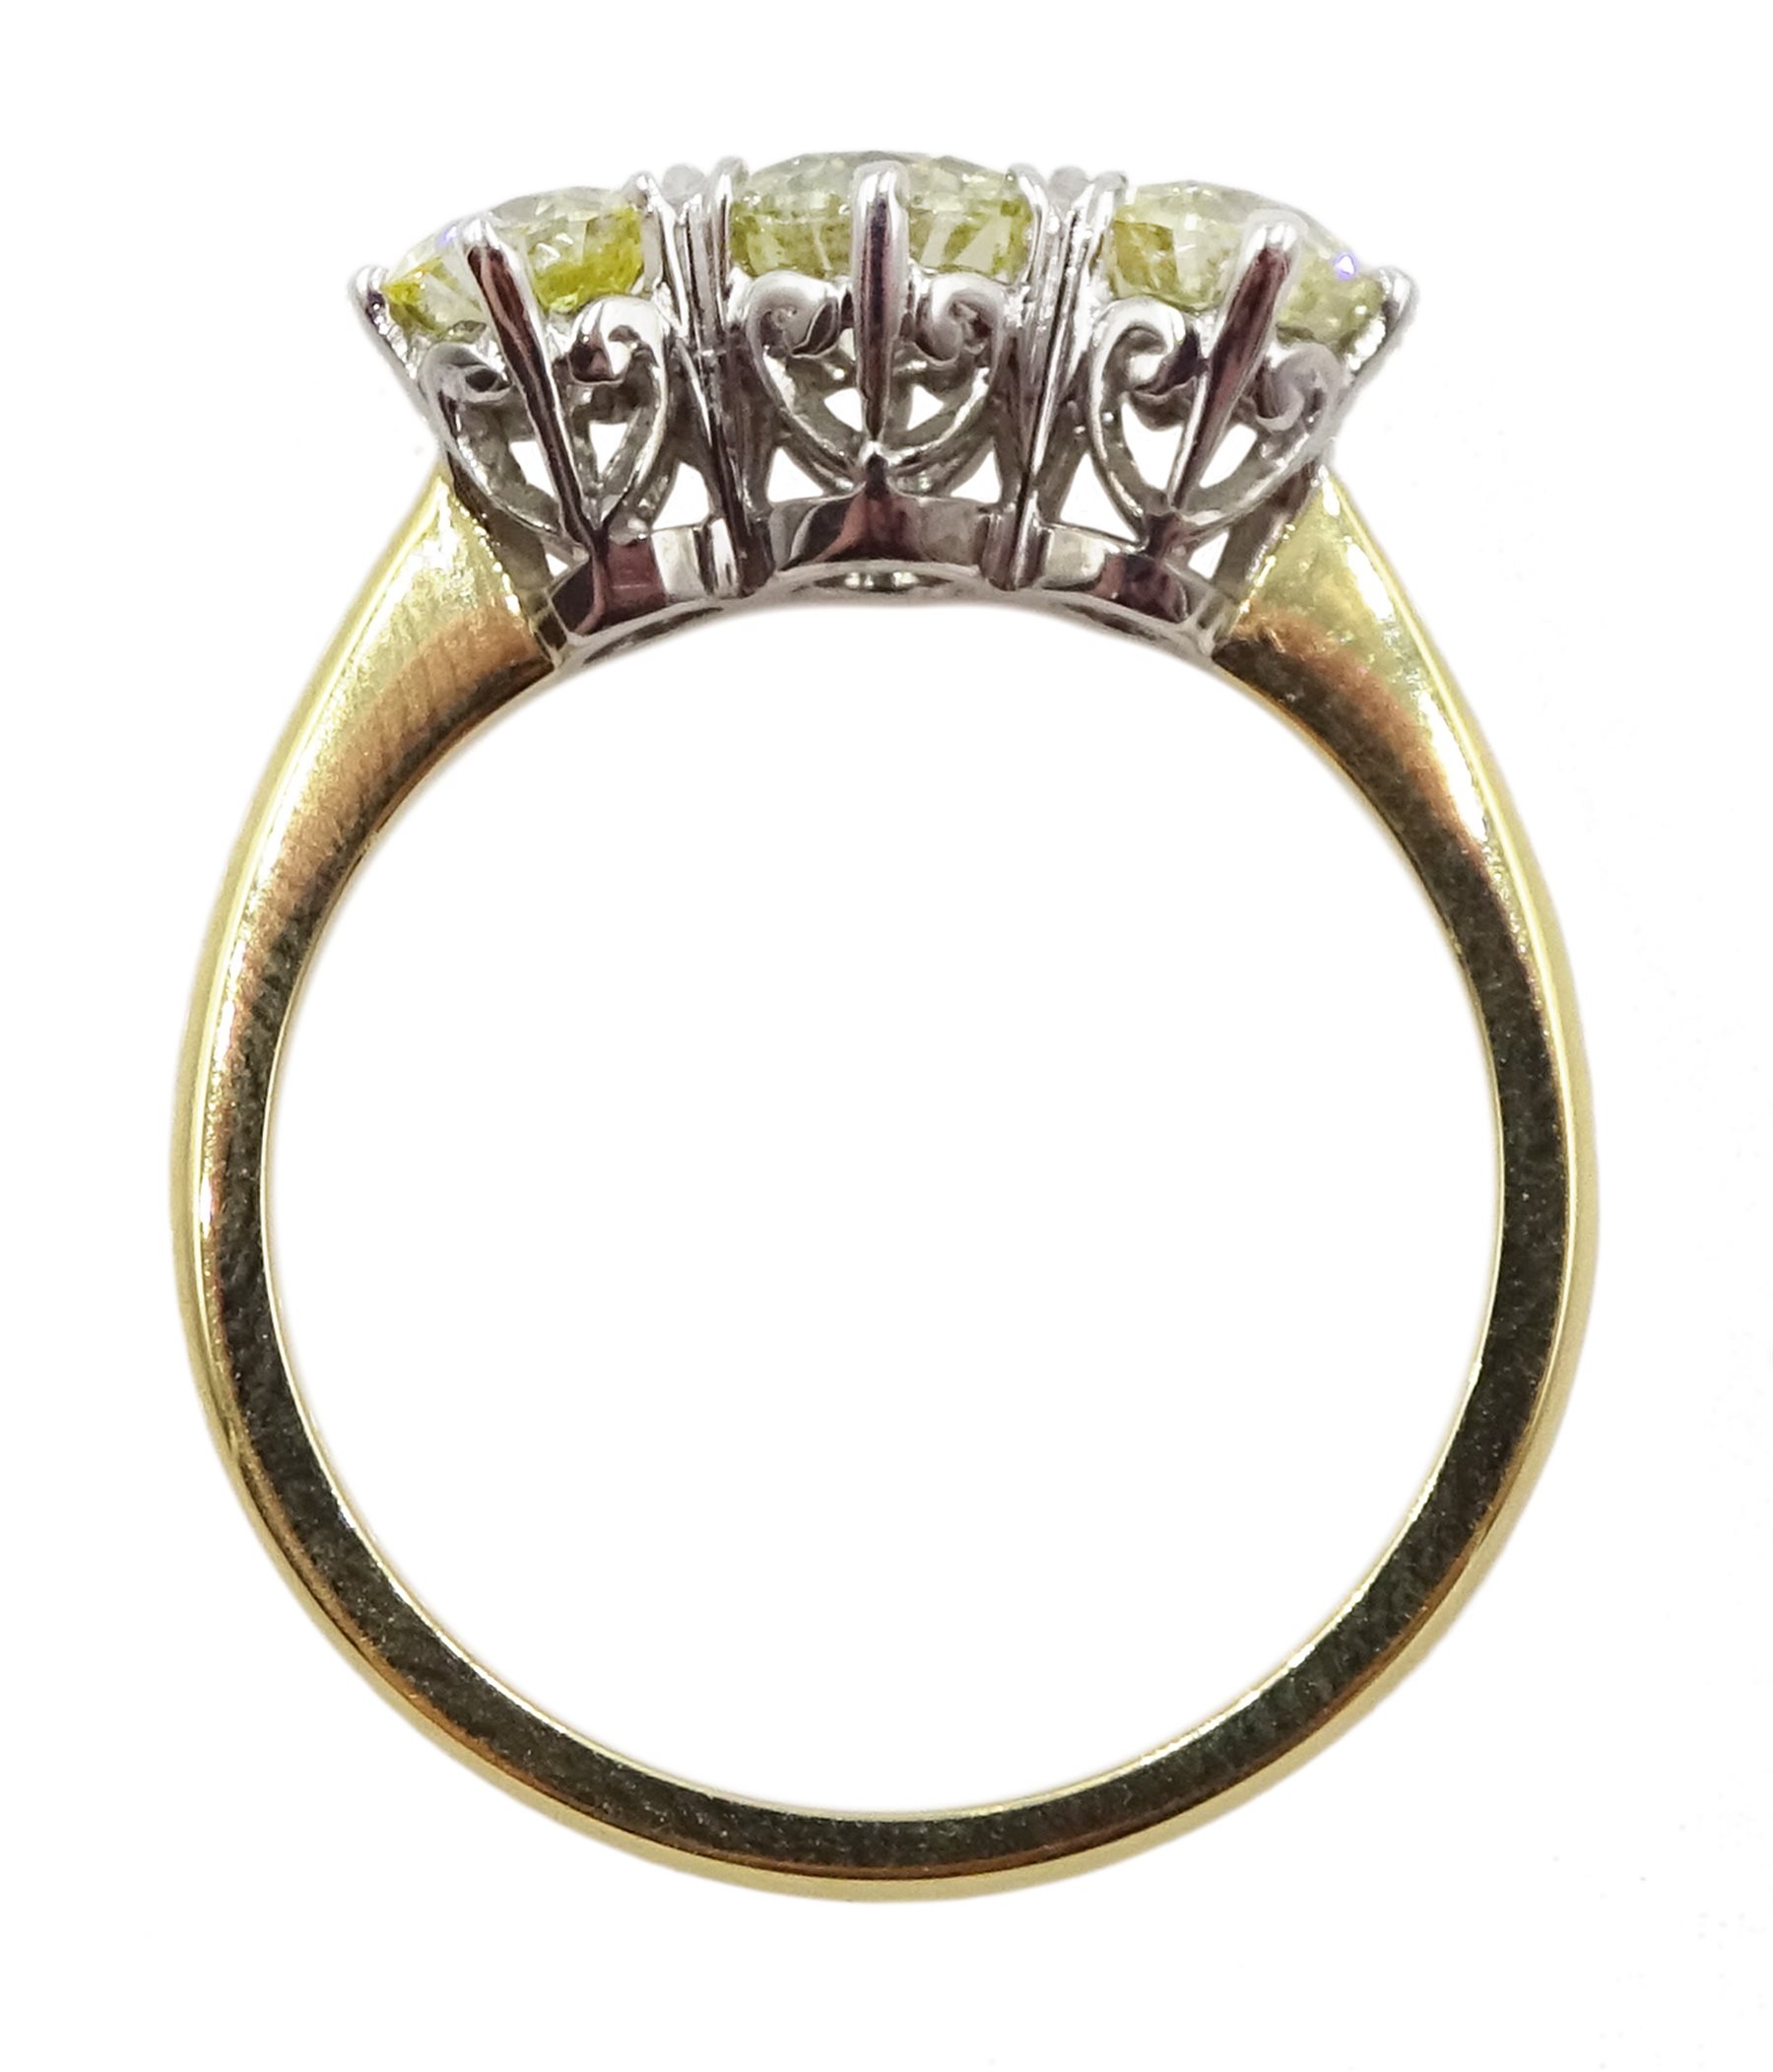 18ct white and yellow gold three stone diamond ring - Image 5 of 7